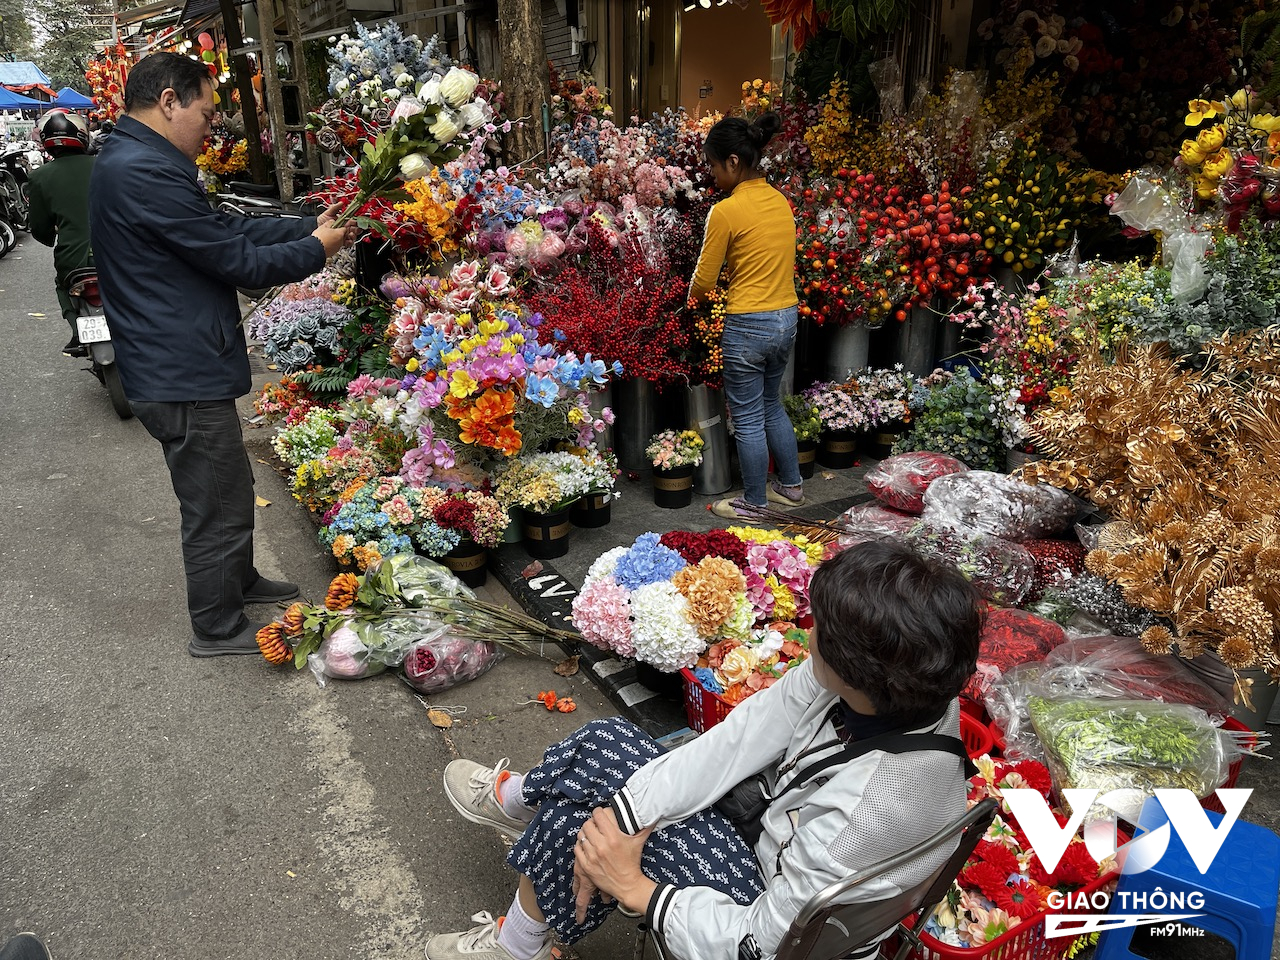 Nhưng mặt hàng hoa giả cũng được nhiều người ưa chuộng. Ở Hà Nội, có những nghệ nhân làm hoa giả với tay nghề cao, khiến những bông hoa giả trông như thật, và được nhiều người tìm mua do bày được lâu